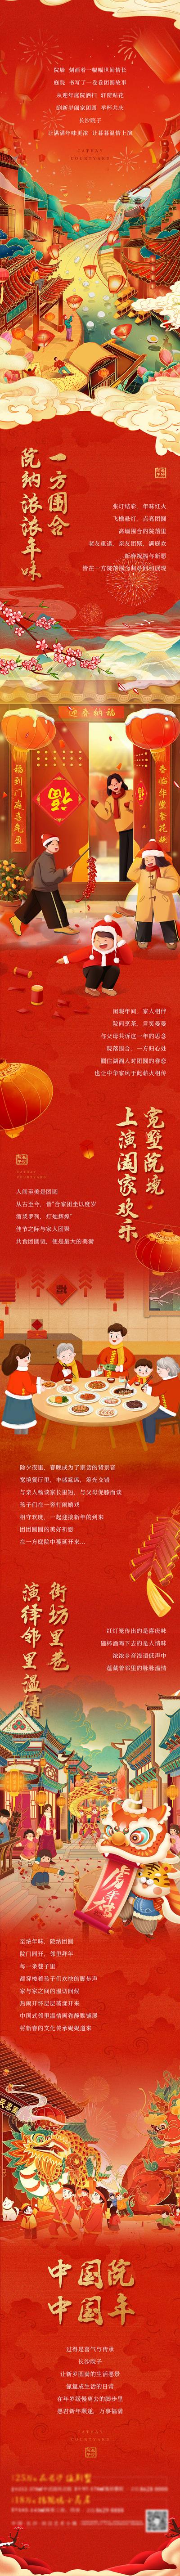 南门网 专题设计 长图 中国传统节日 春节 新年 返乡 过年 团圆 国潮 红金 插画